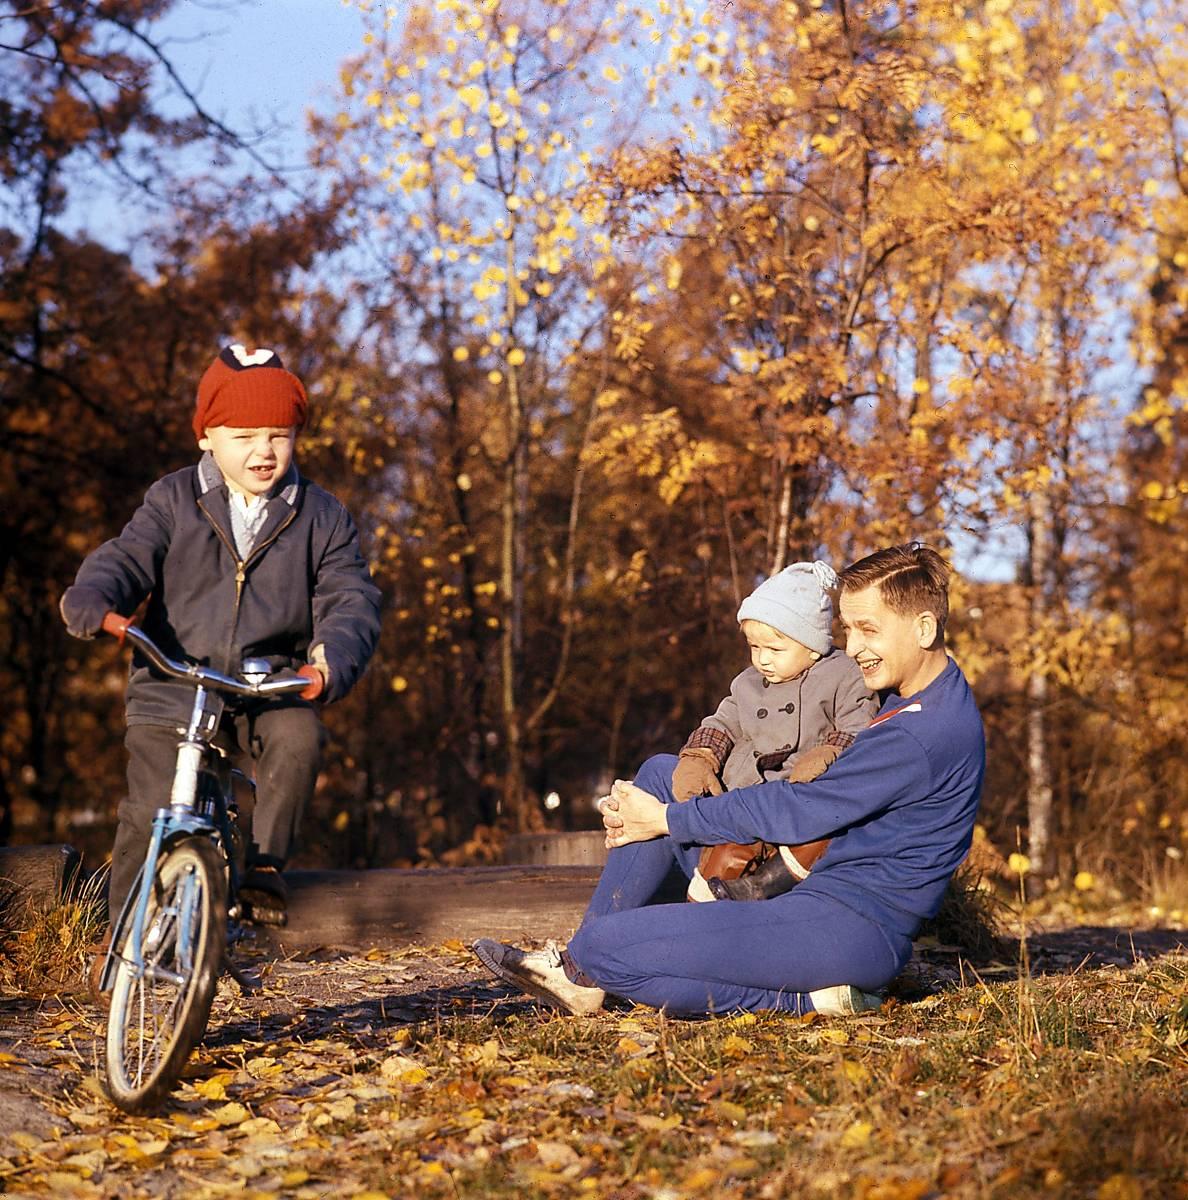 Bild ur filmen där Olof Palme hösten 1963 leker med barnen Joakim och Mårten.